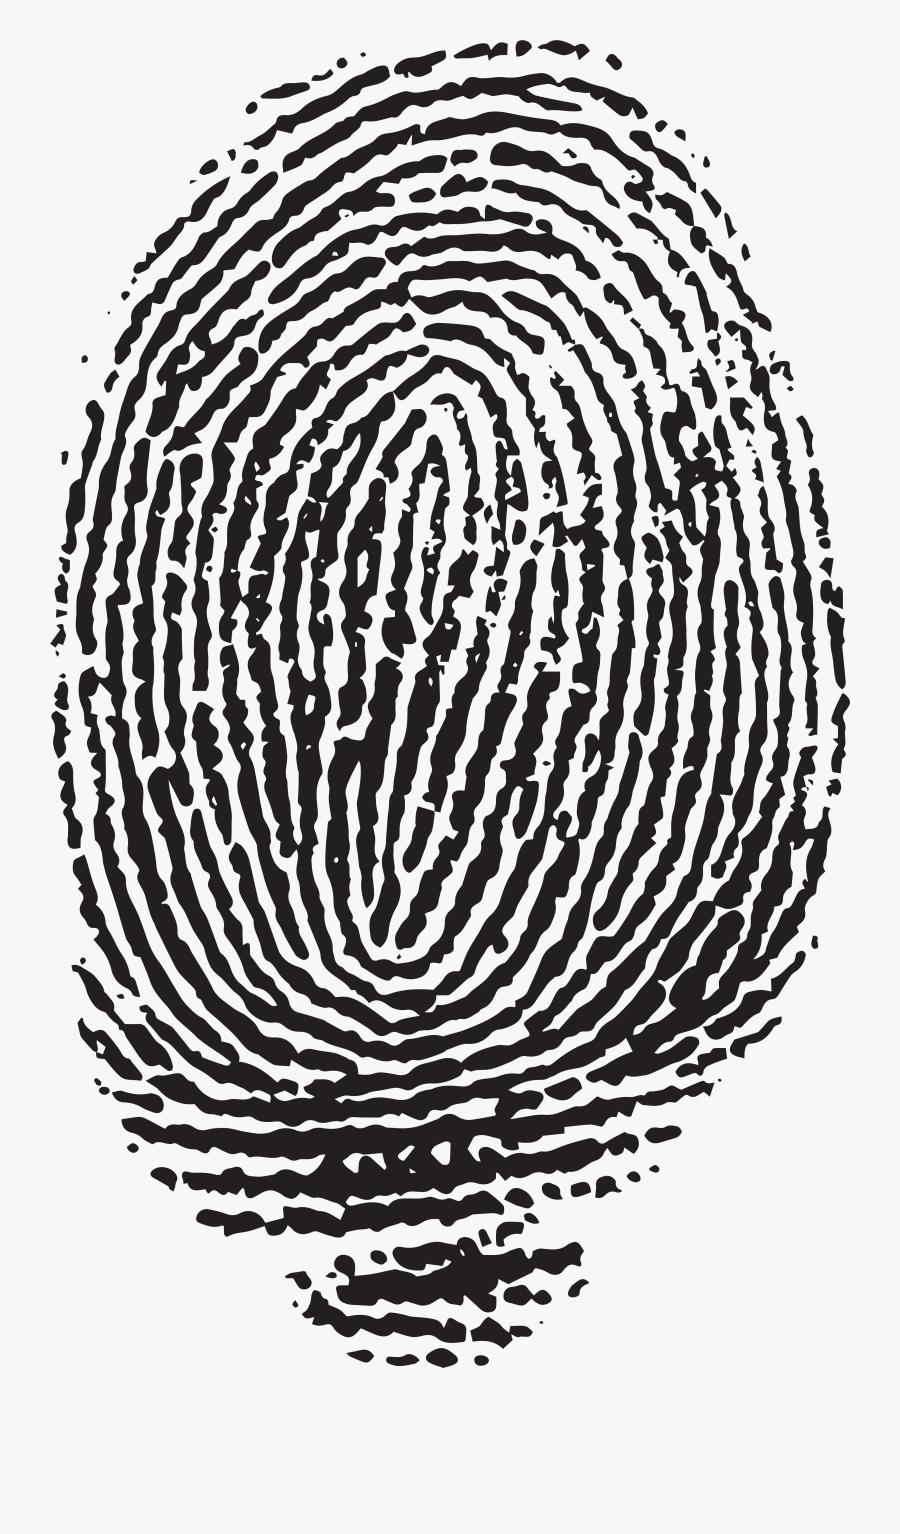 Fingerprint Png - Transparent Background Fingerprint Clipart, Transparent Clipart